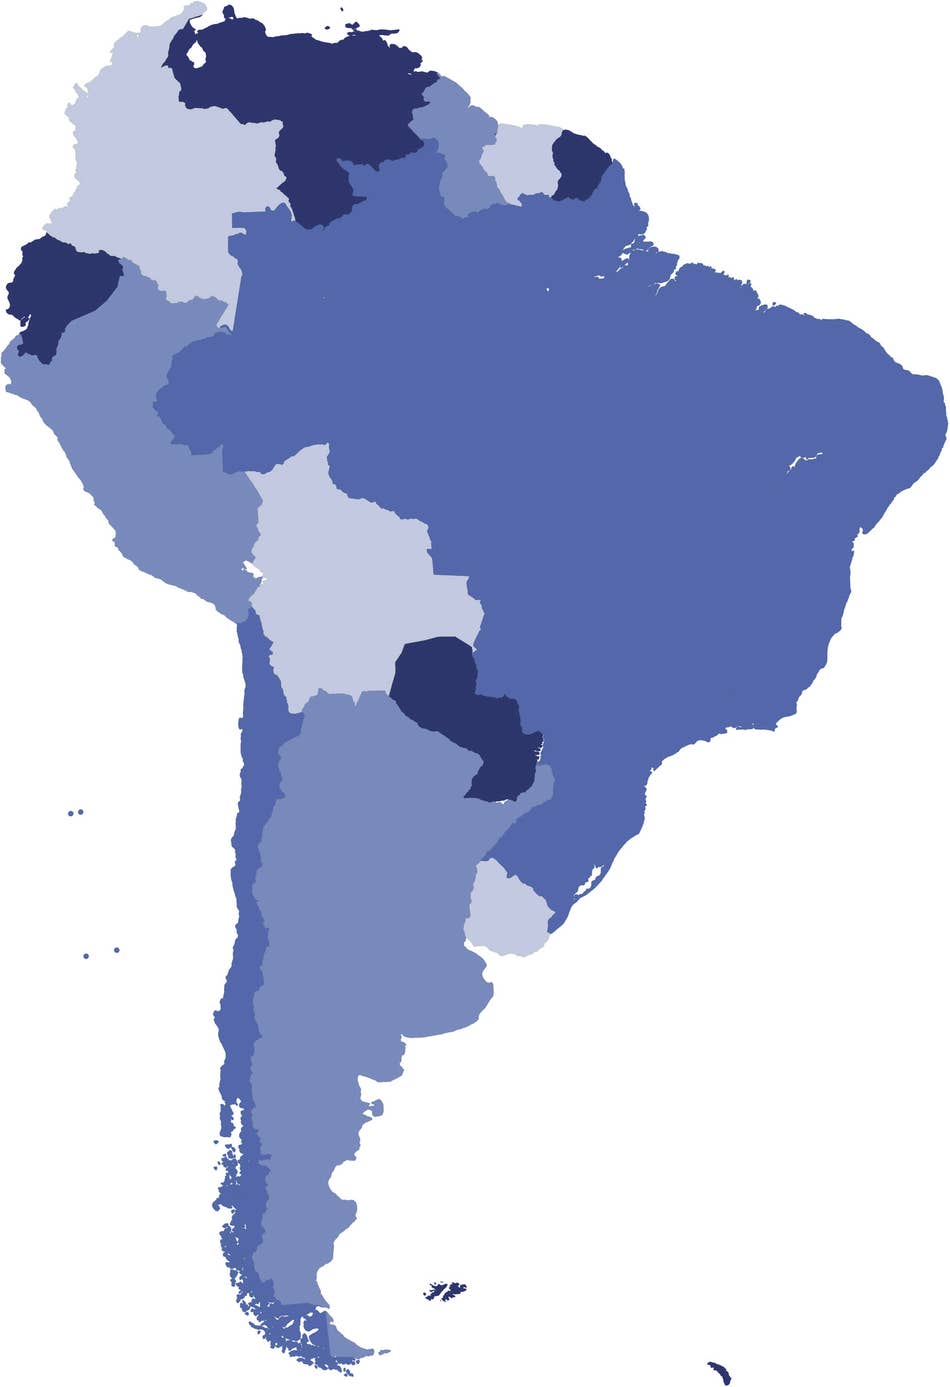 Desafio países da América do Sul - Teste de geografia 